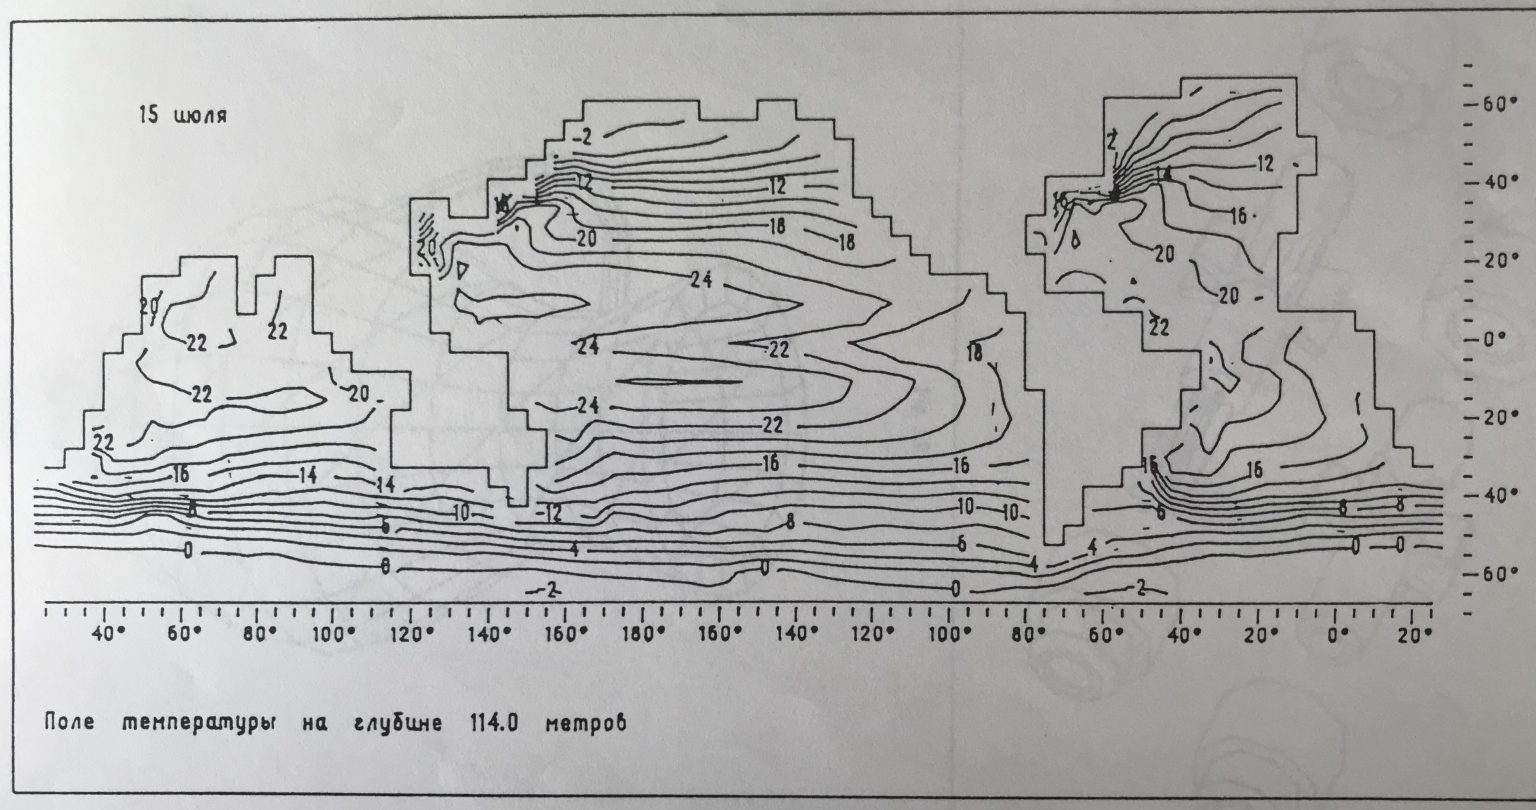 Пример графика функции 2-х переменных, подготовленного с помощью системы СМОГ. 70-е годы